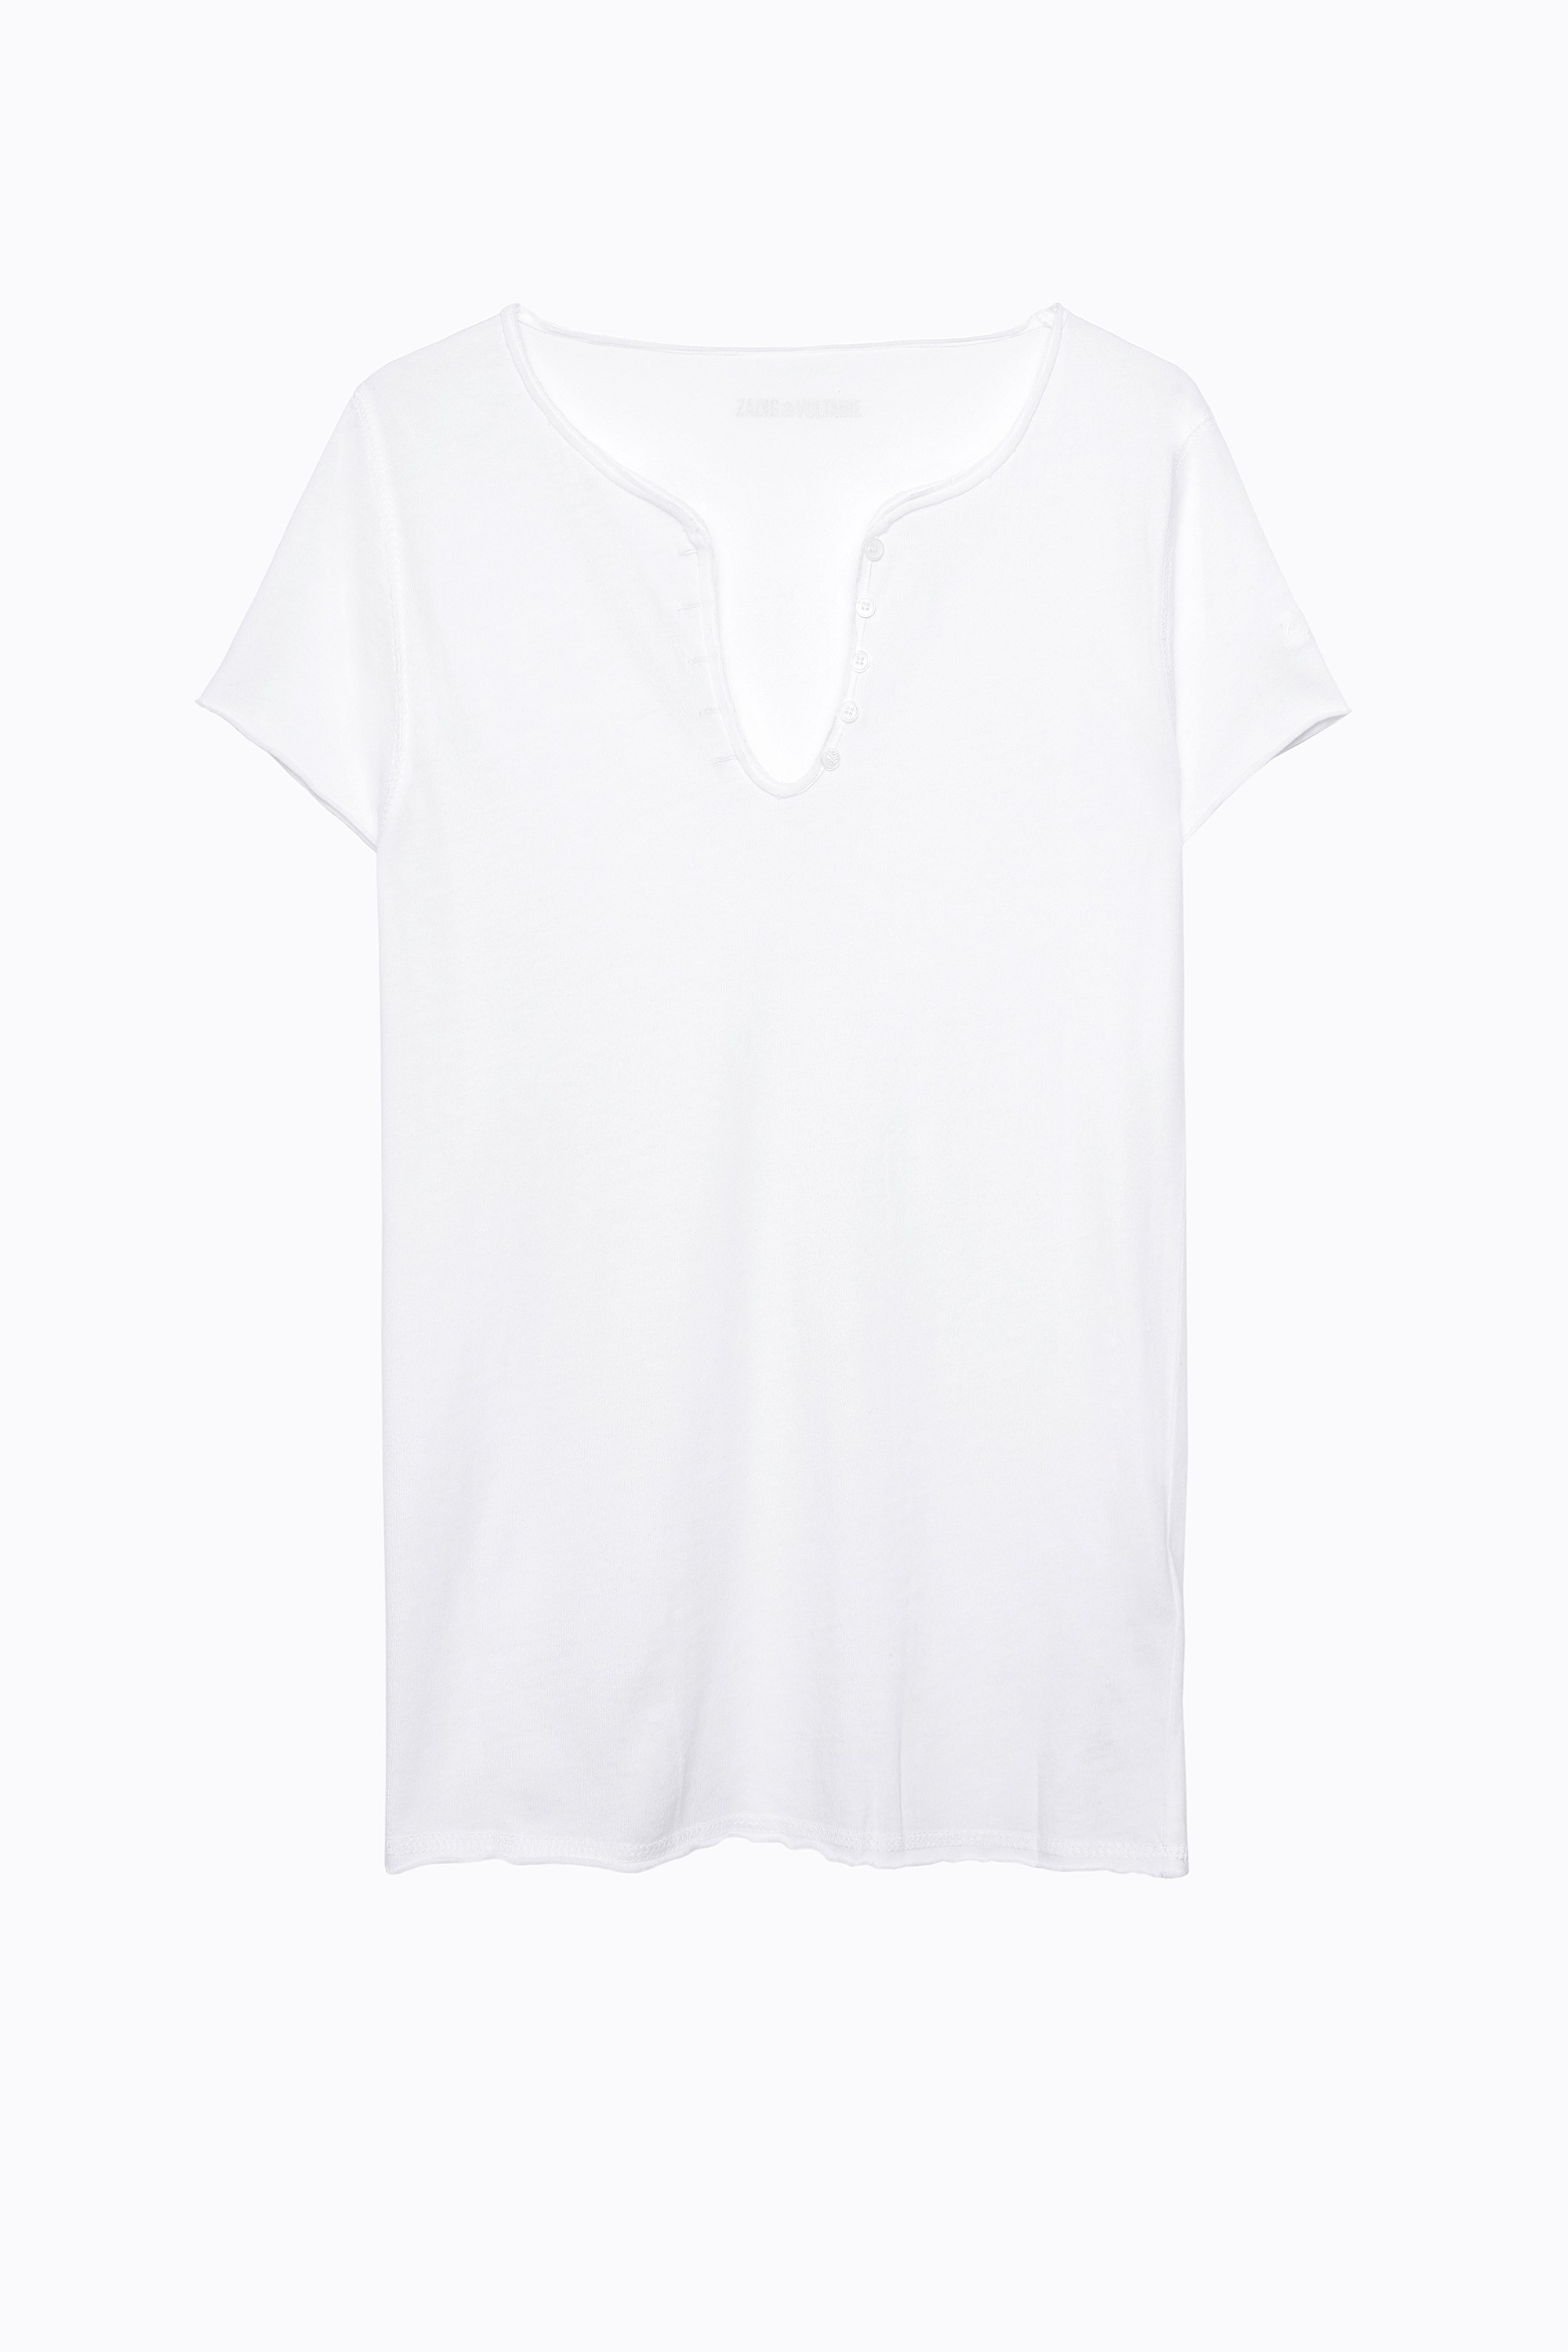 Zadig-Voltaire-White-Tunisien-T-Shirt.jpg